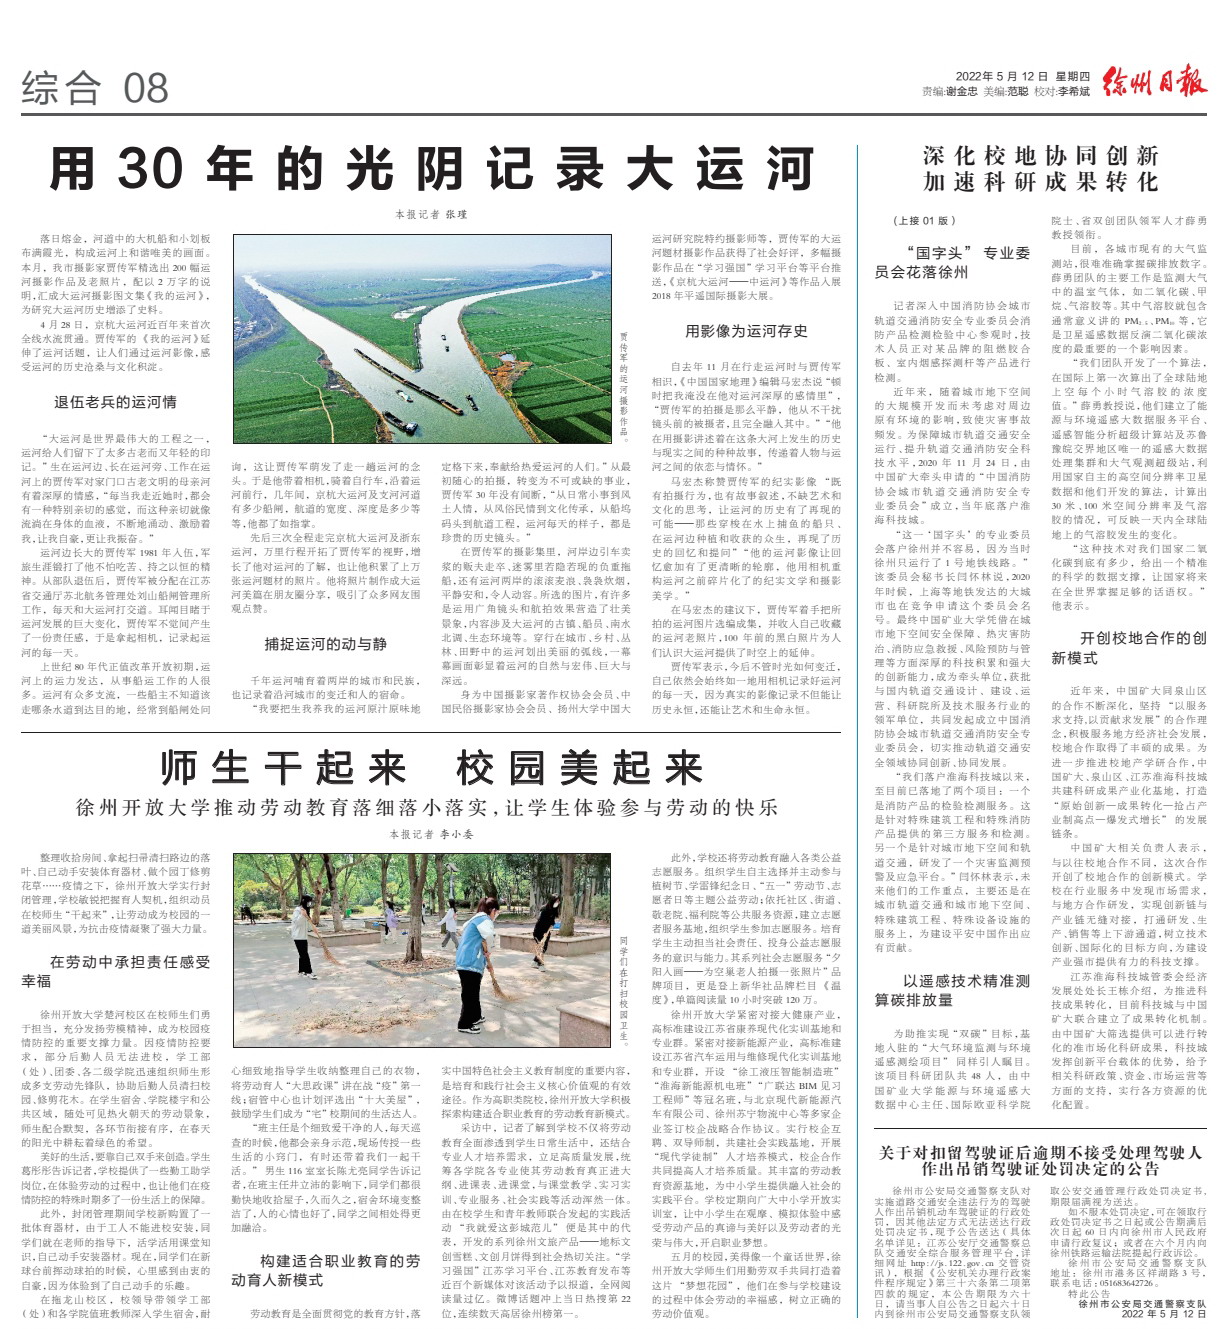 《徐州日报》、“汉风号”重点刊登bbin劳动教育新经验